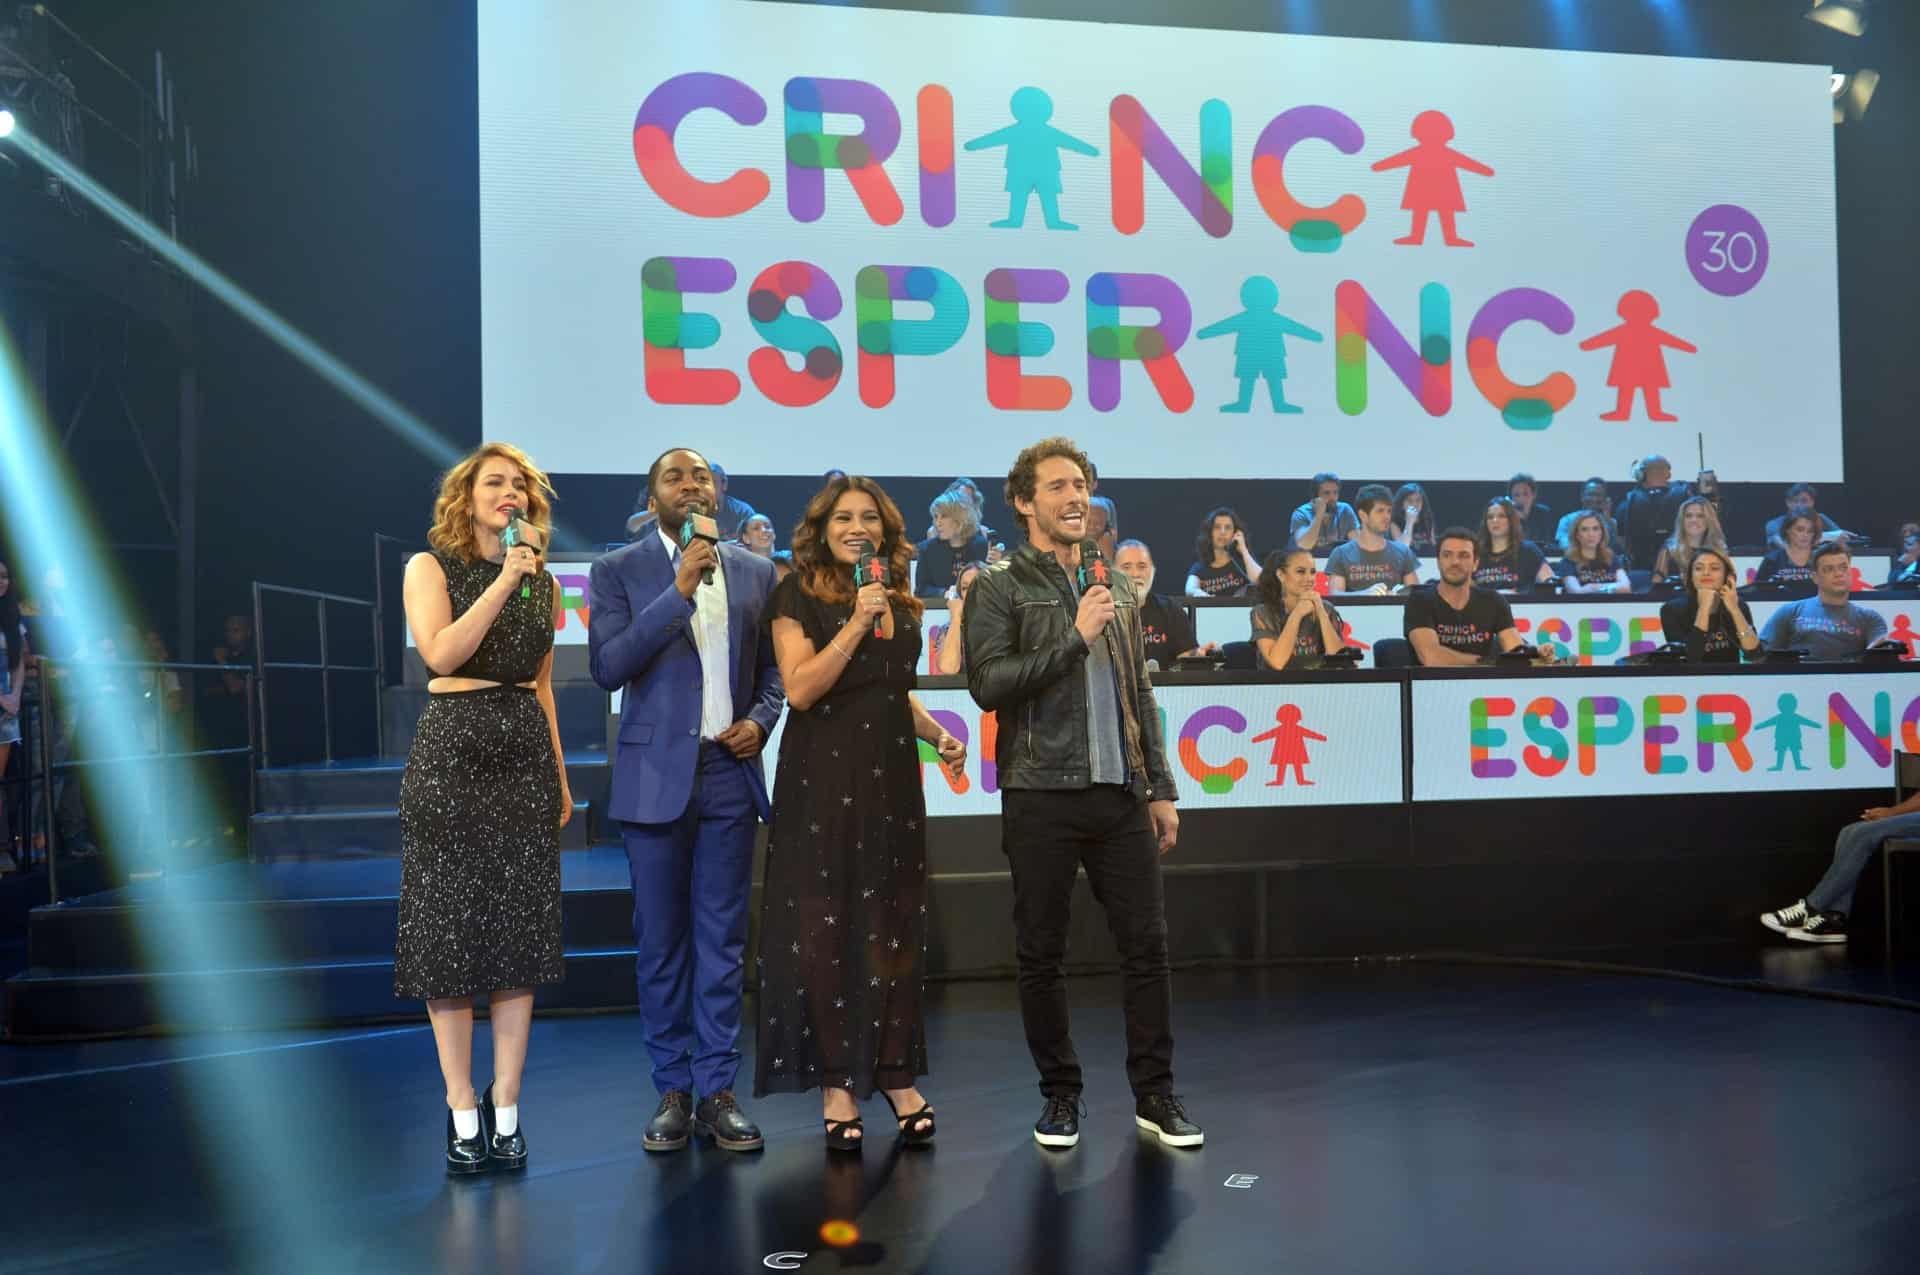 Globo planeja não pedir doações na próxima edição do Criança Esperança